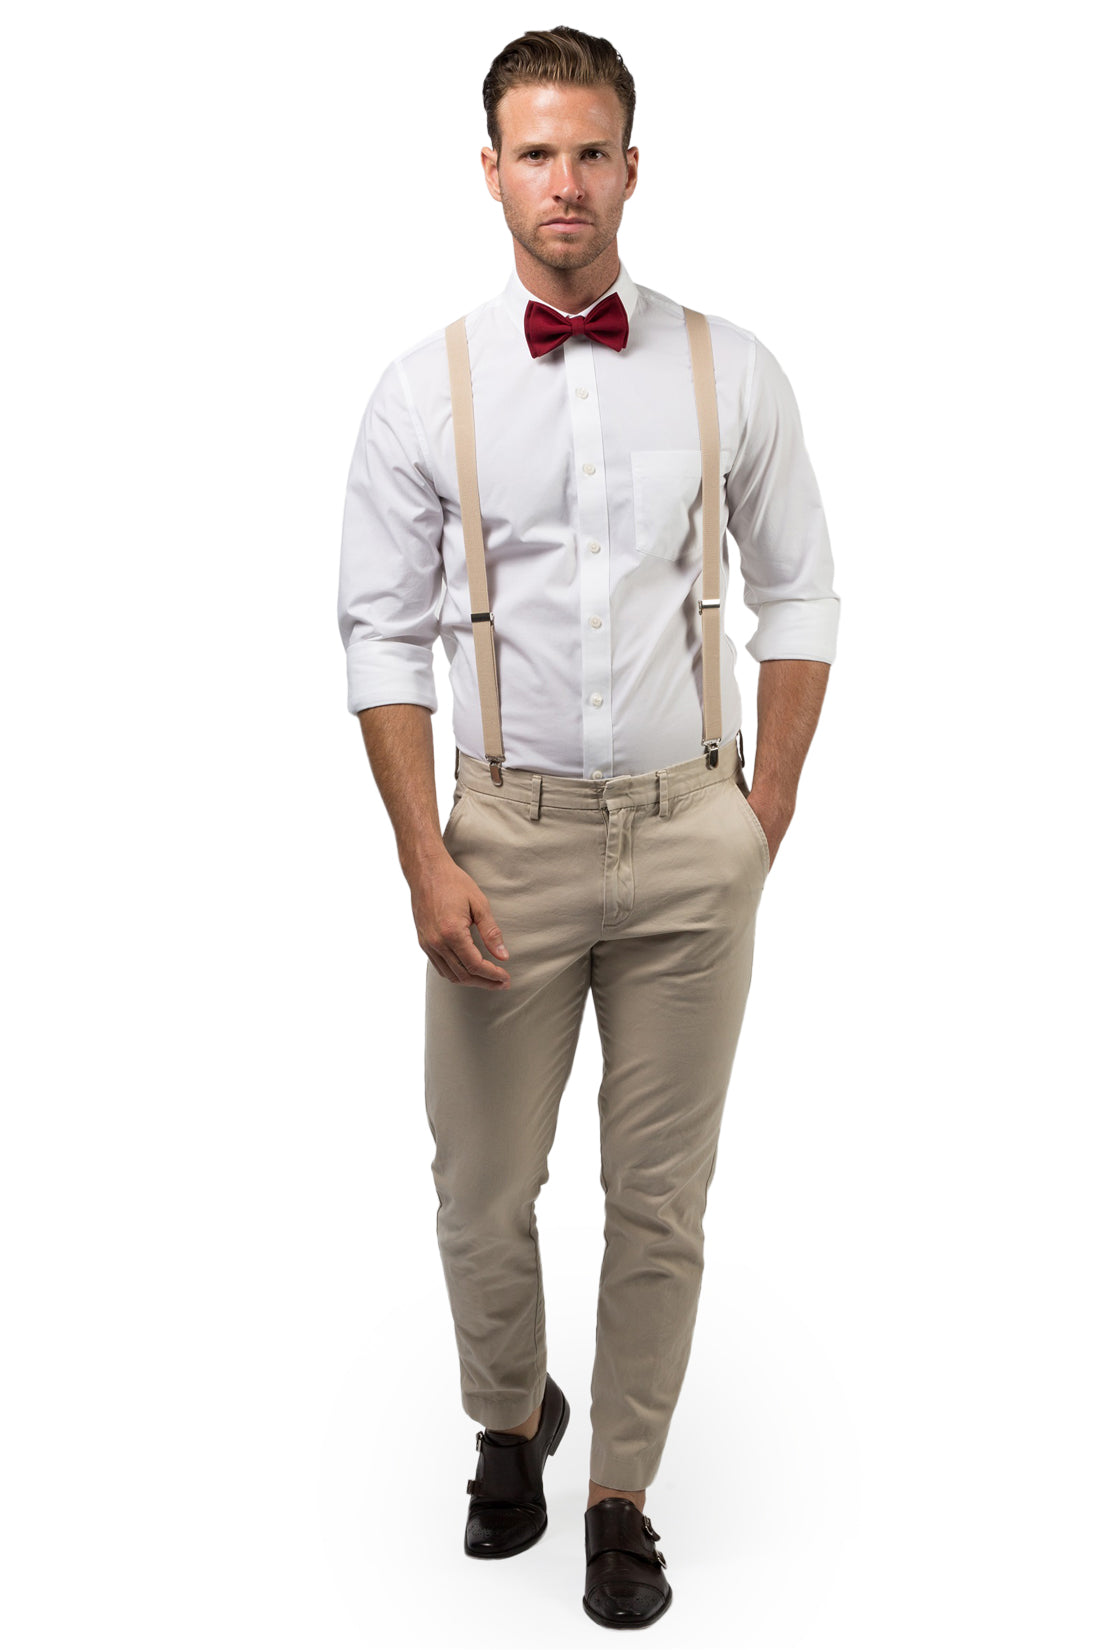 Beige Suspenders & Burgundy Bow Tie